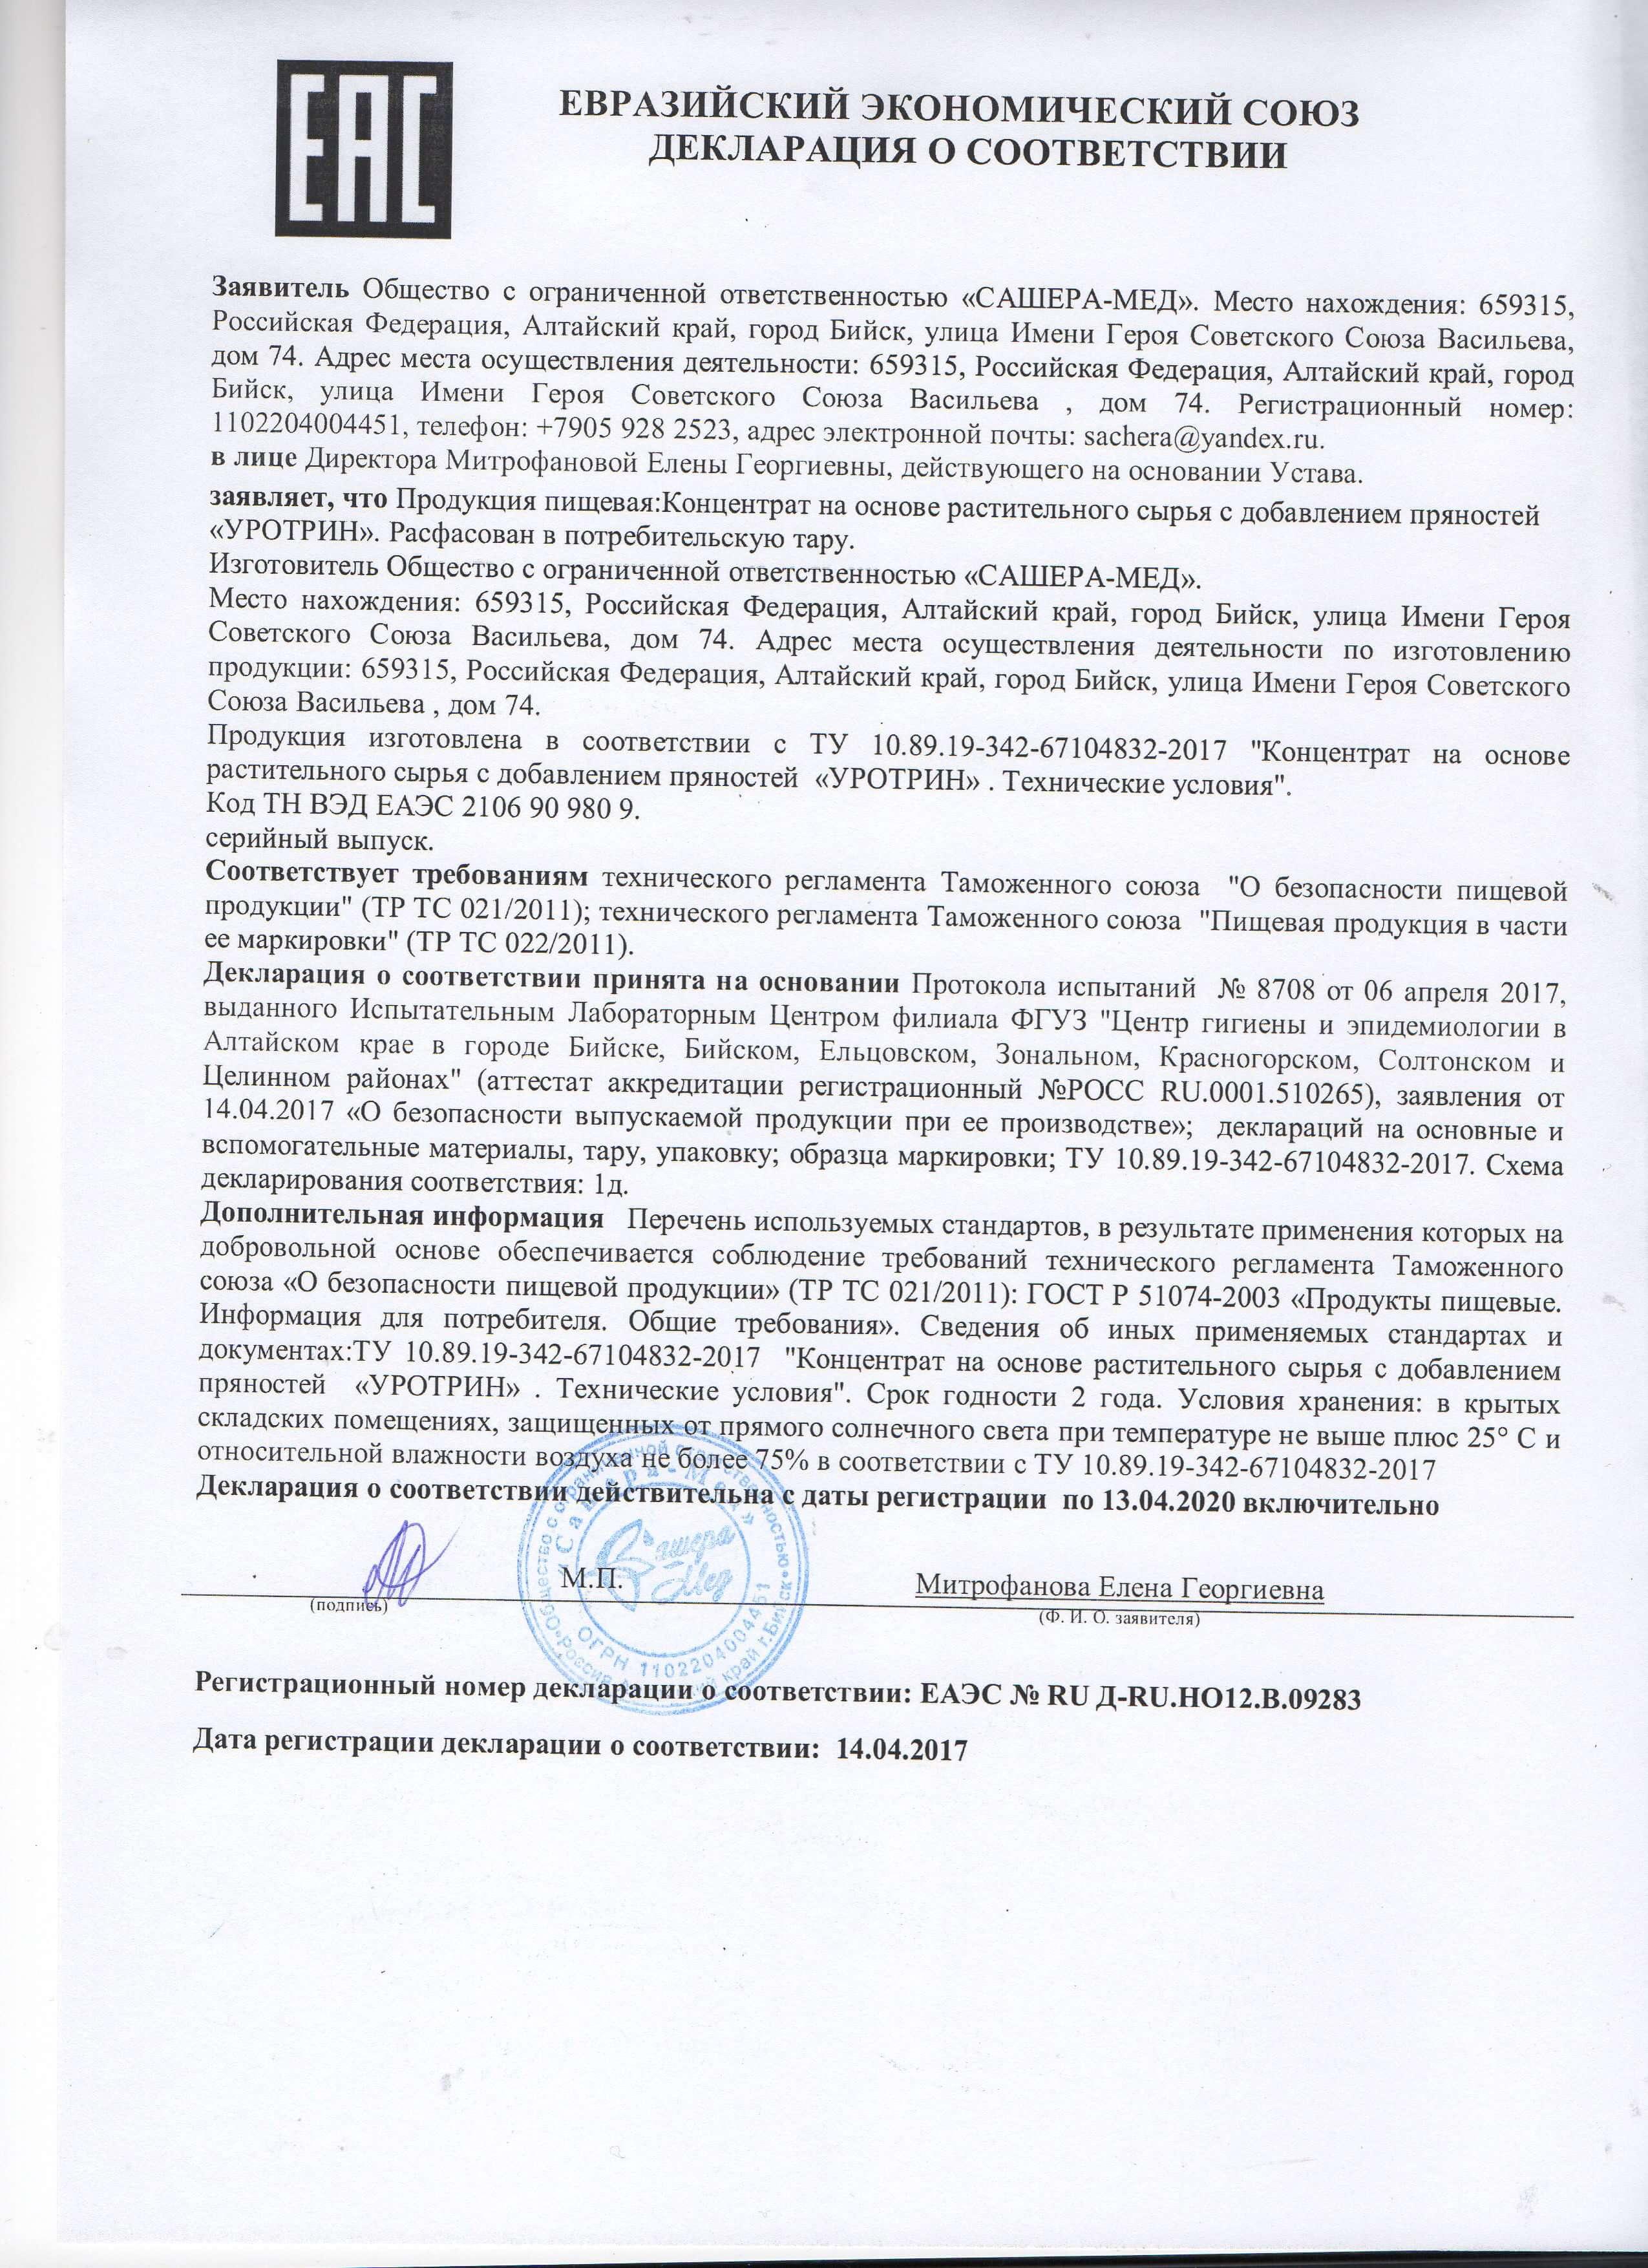 Сертификат на уротрин в Екатеринбурге